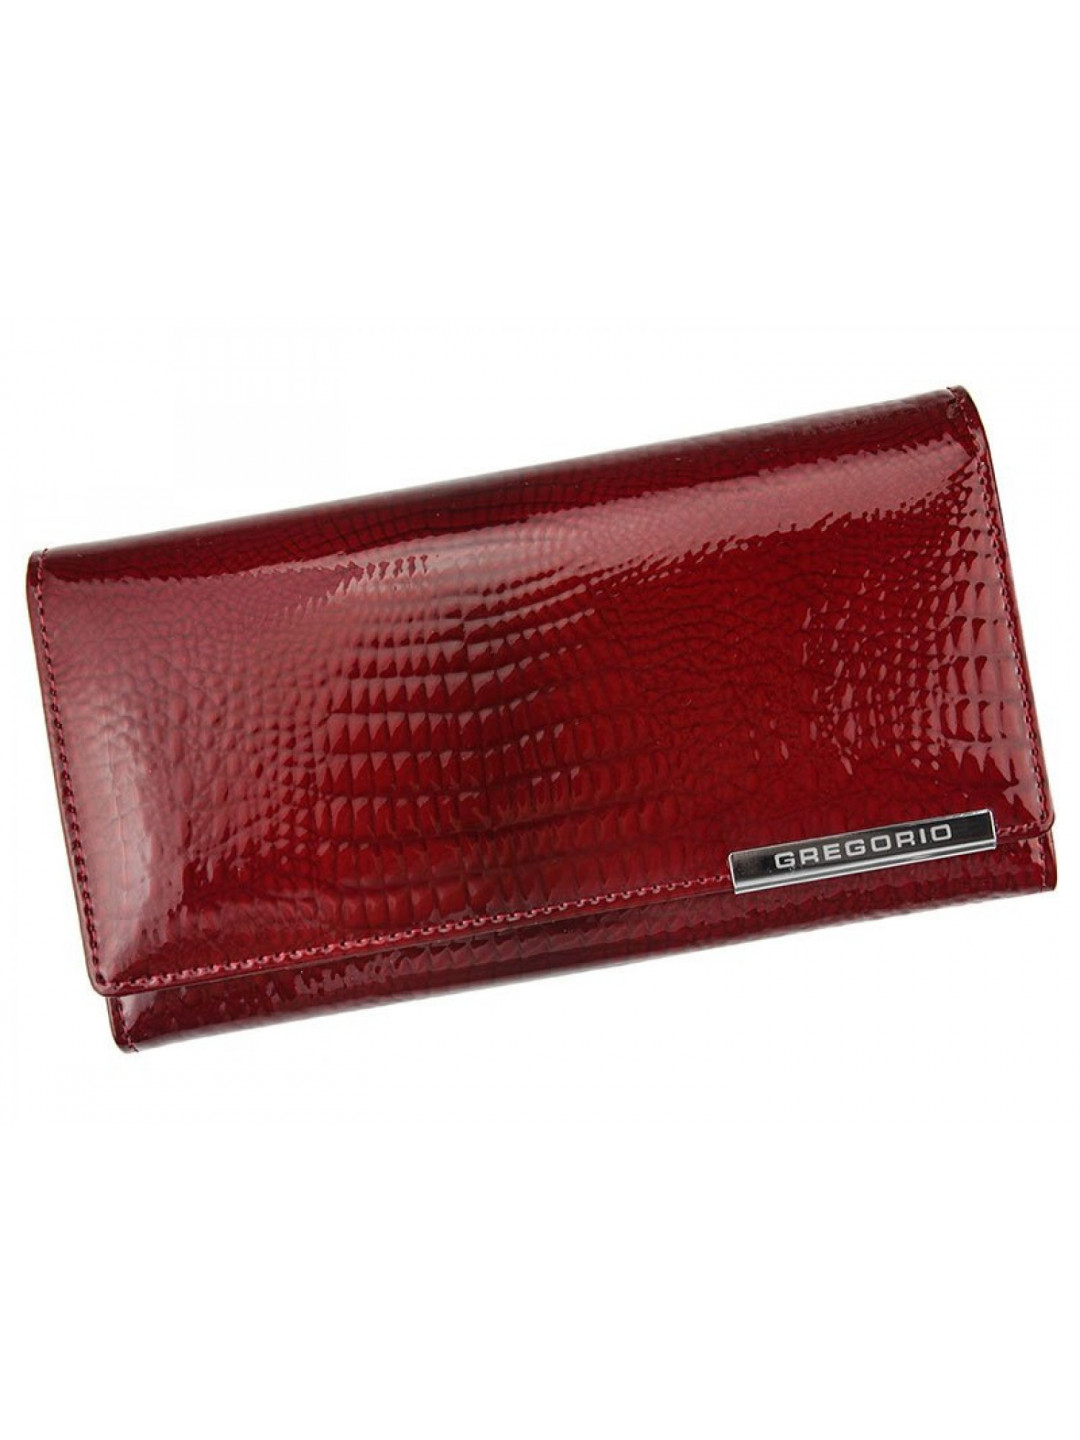 Luxusní dámská velká kožená peněženka Gregorio CAMILLA červená